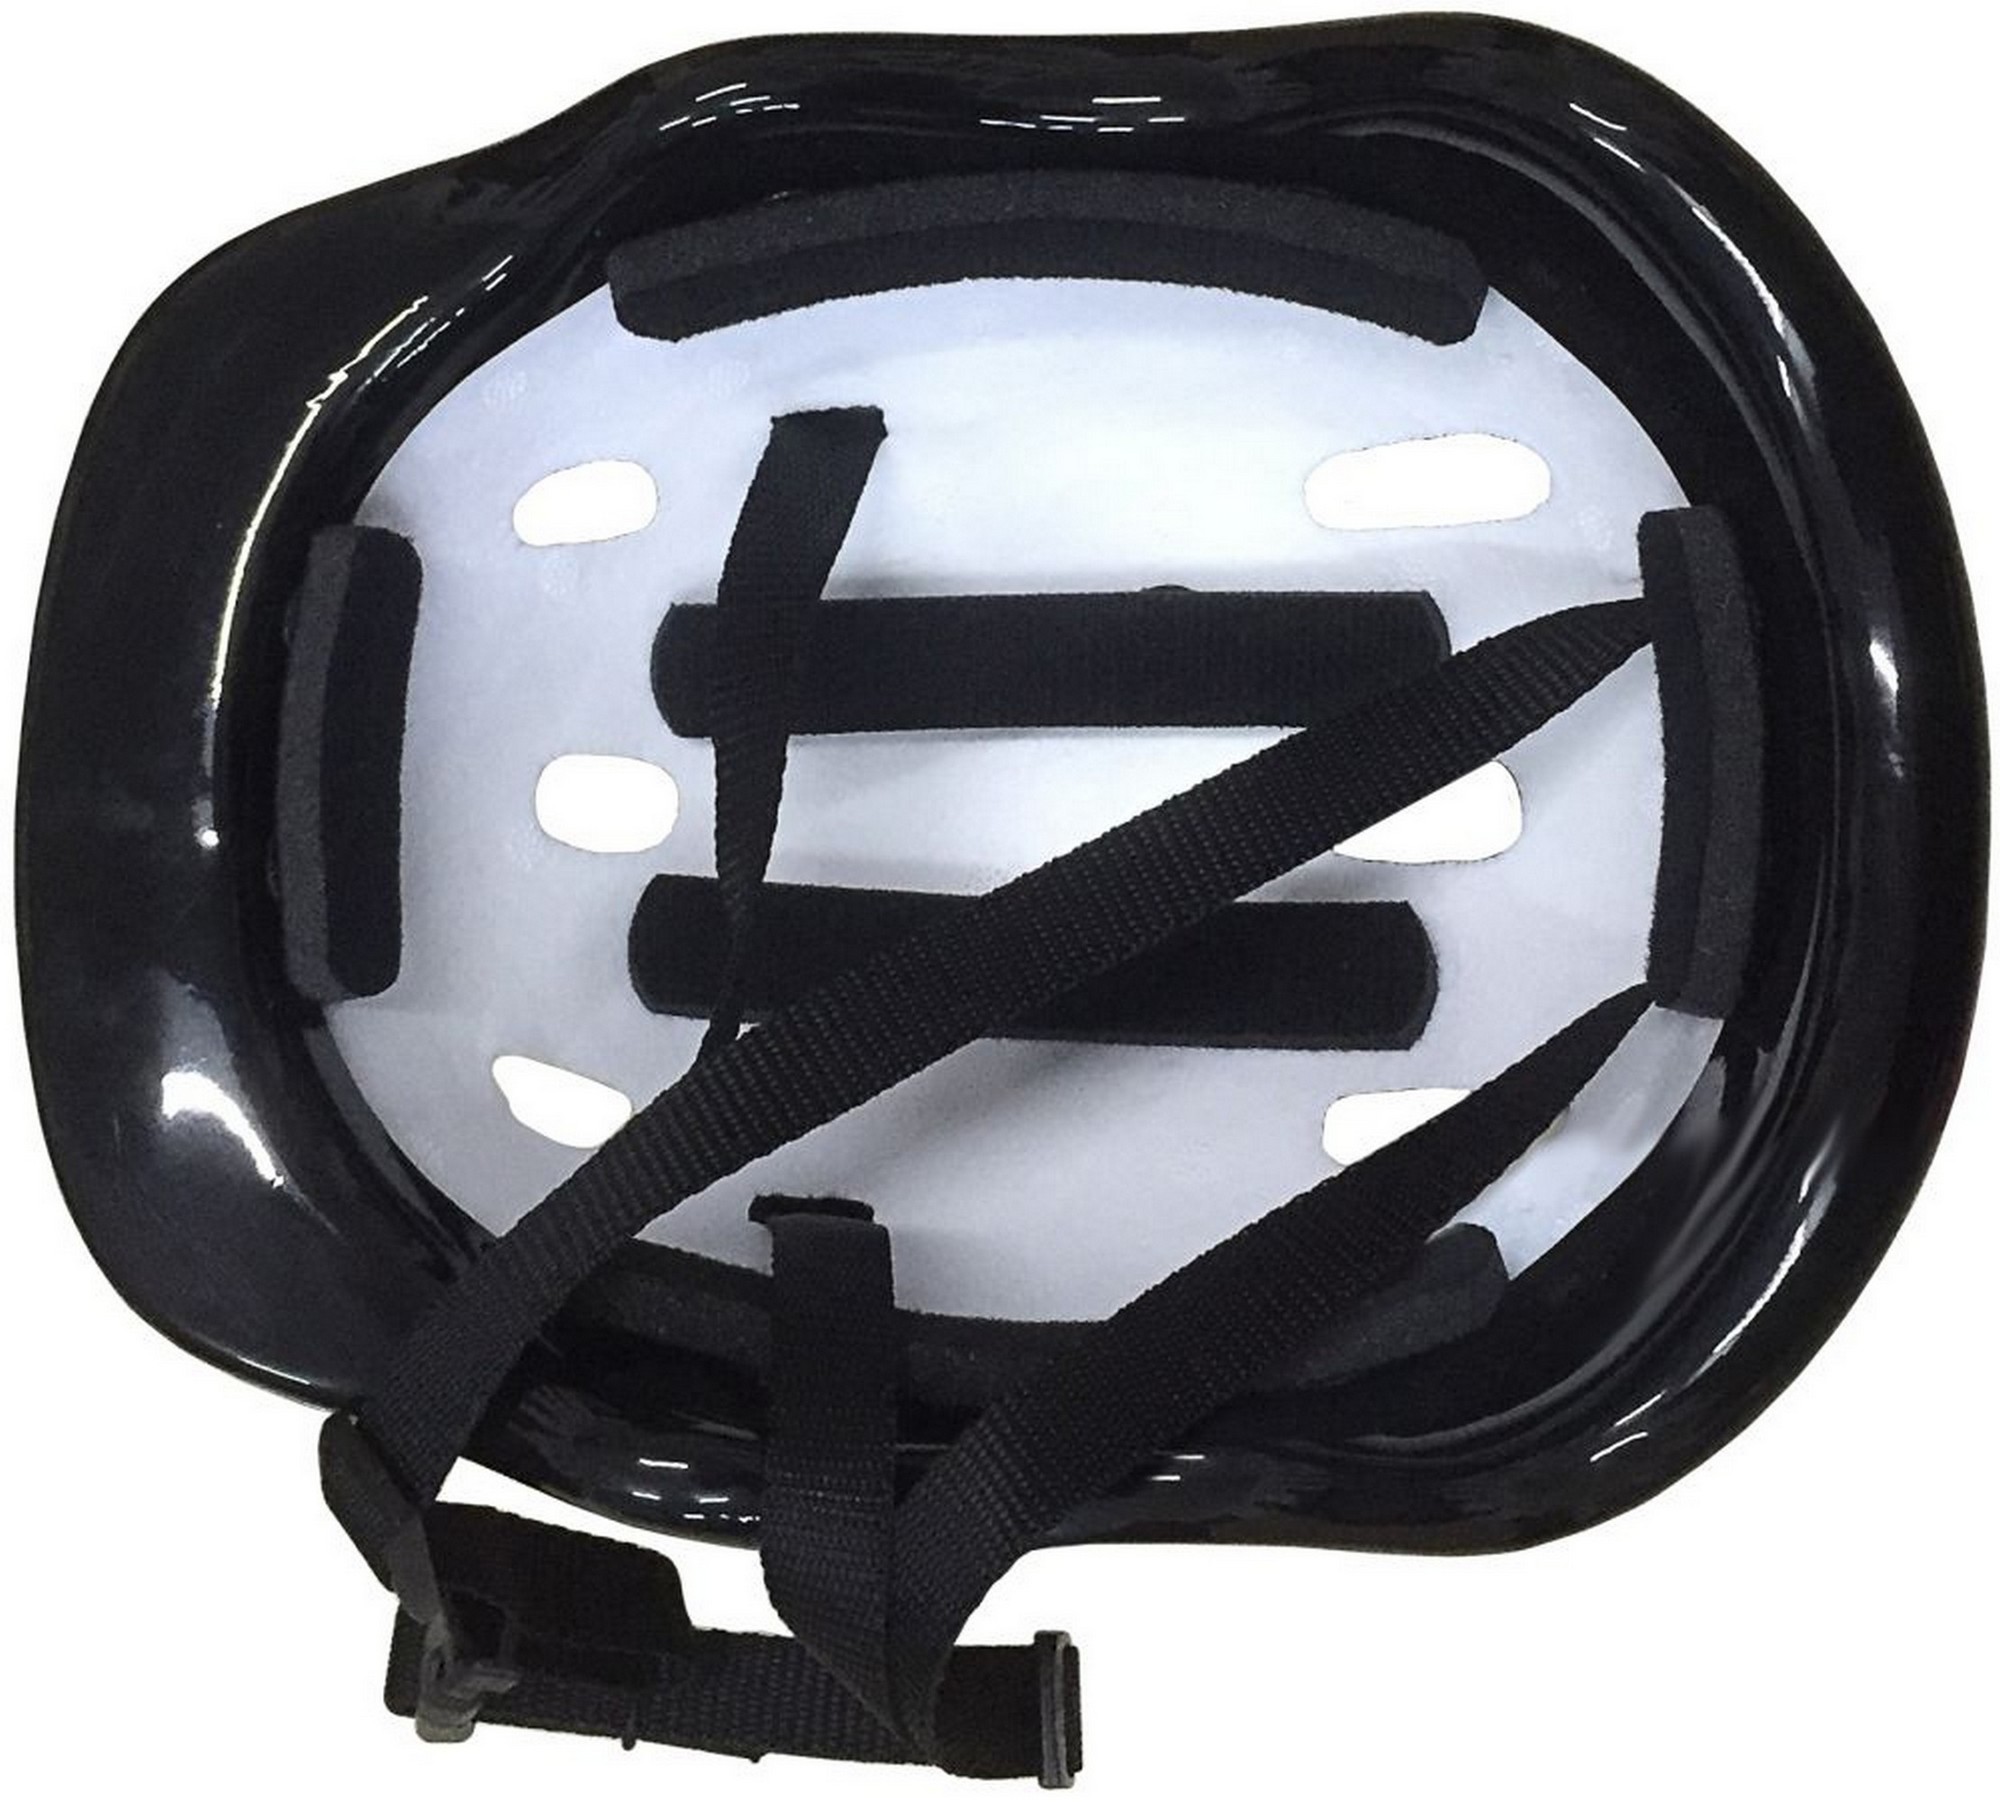 Шлем защитный подростковый Atemi размер окруж (52-54 см), М (6-12 лет) AKH06GM аквапринт Зверушки 2000_1802